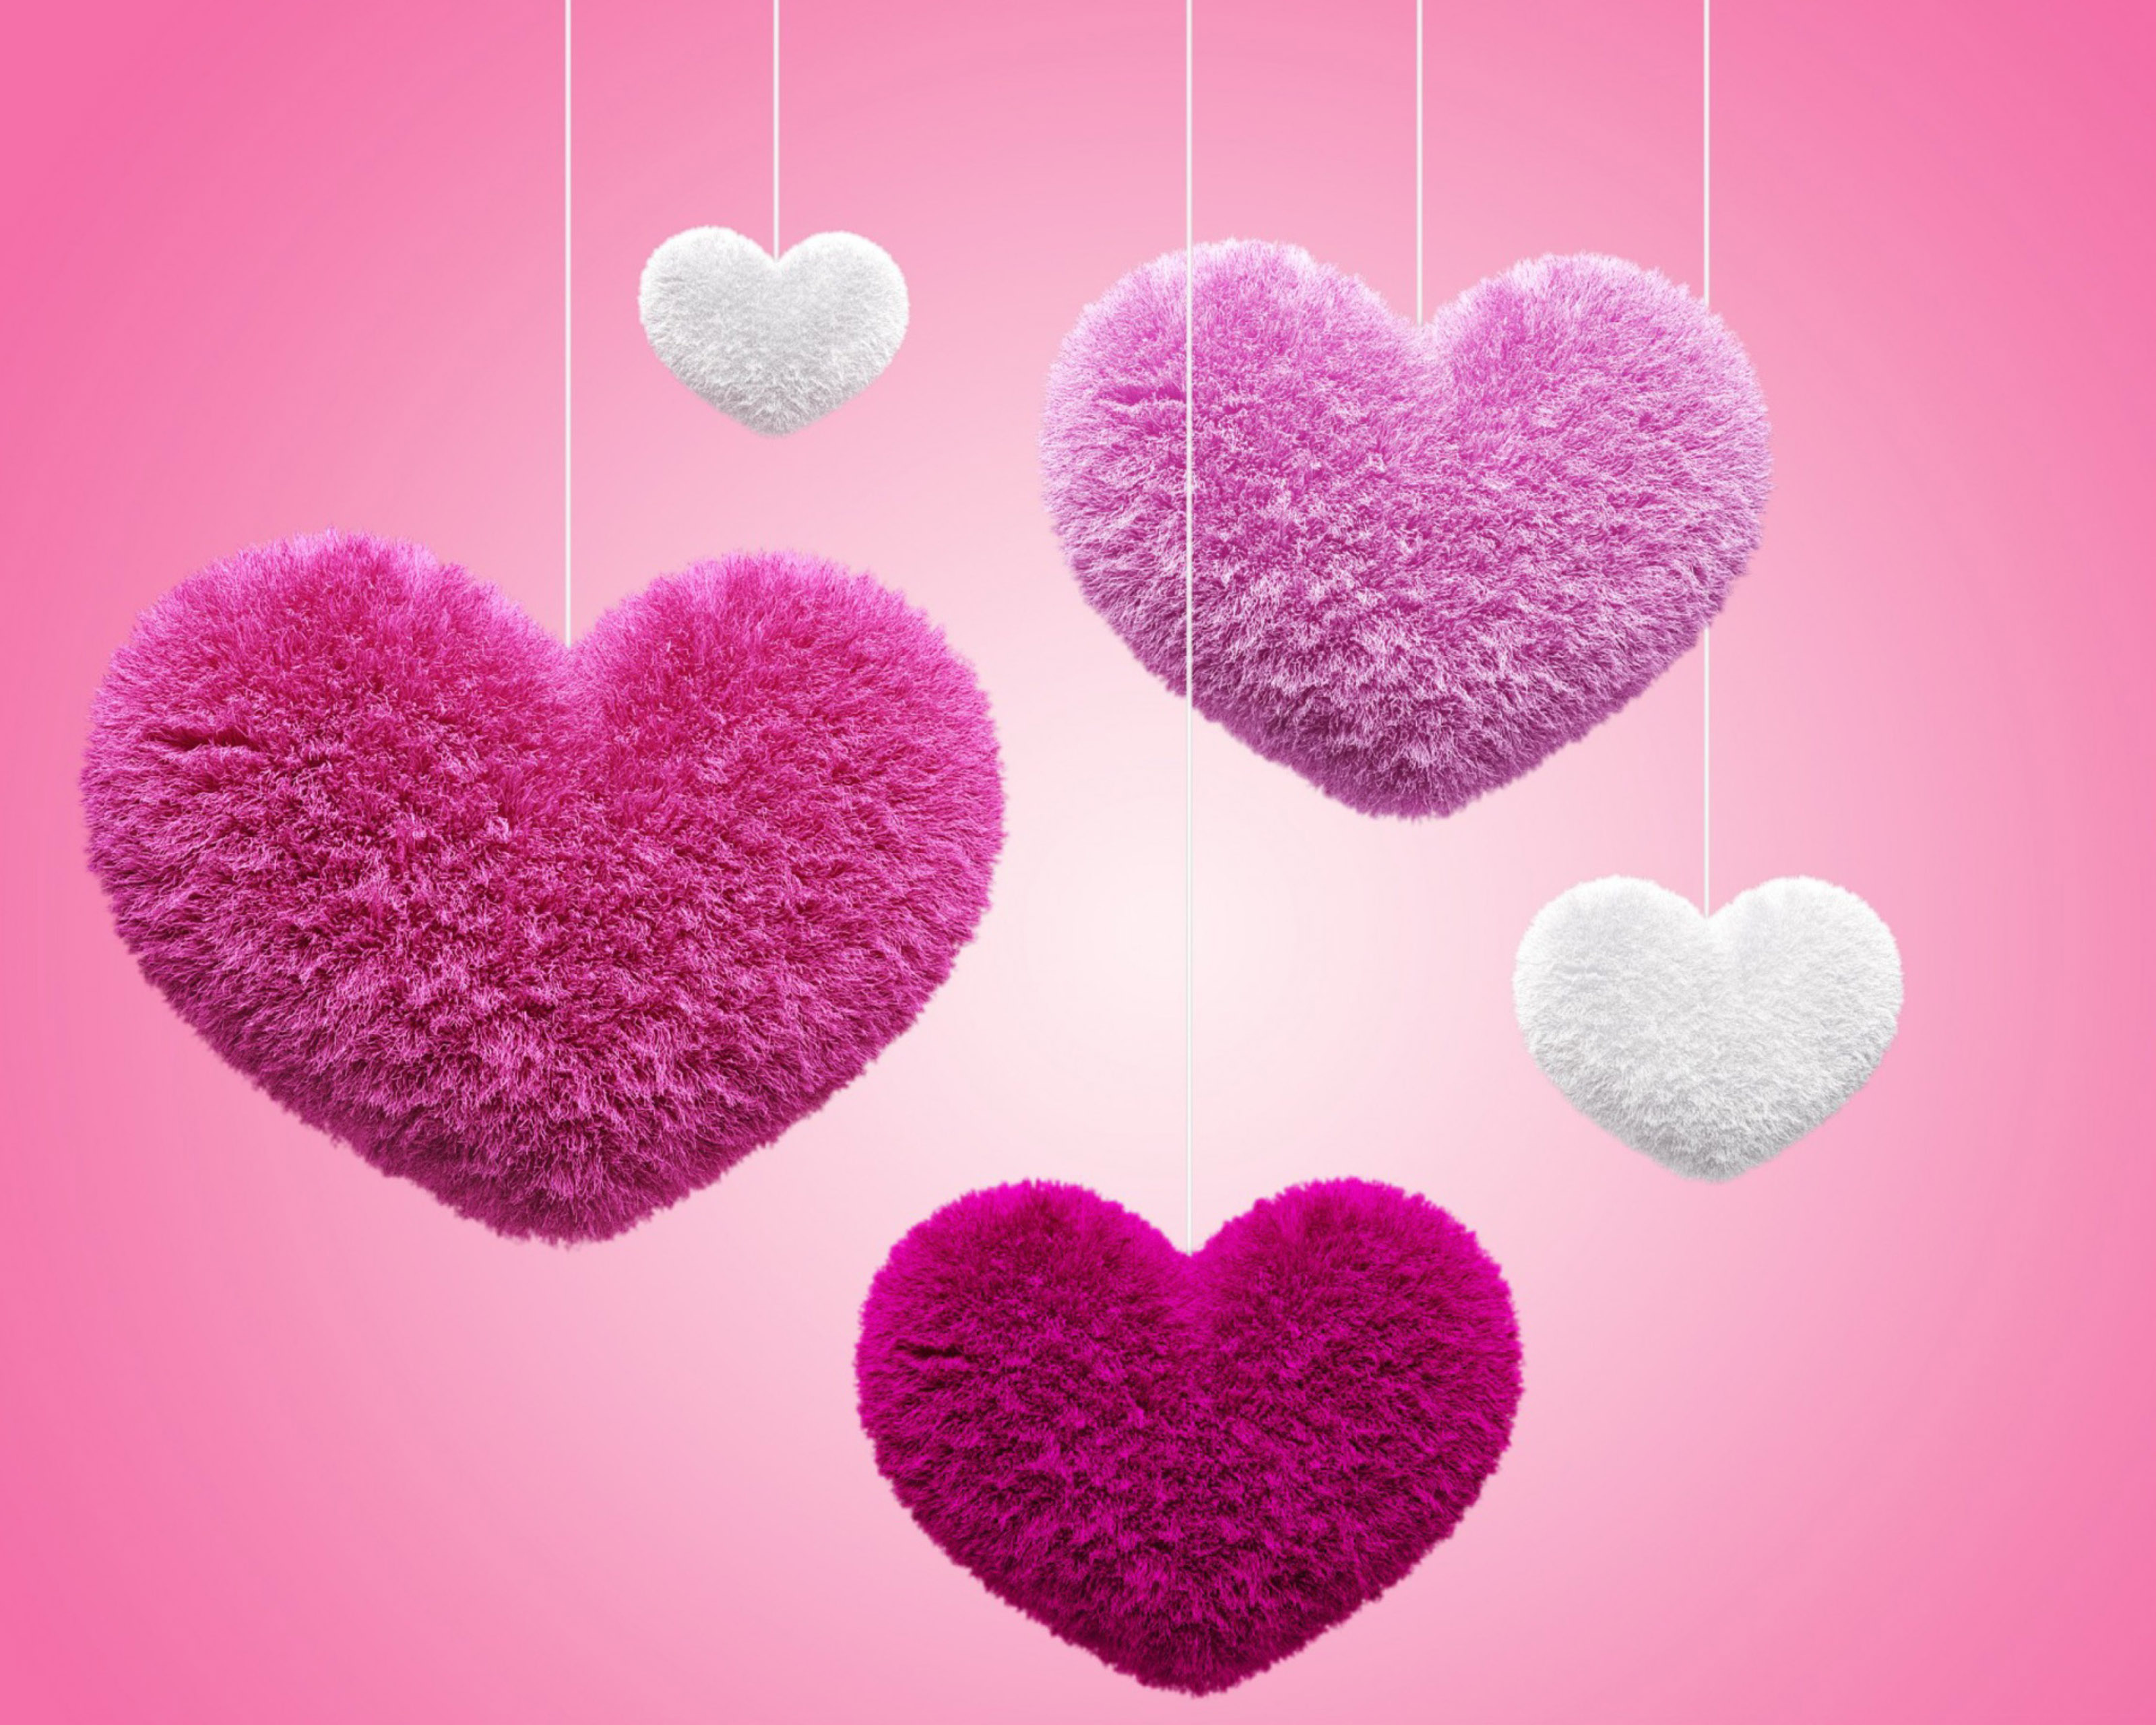 fonds d'écran hd pour lenovo k3 note,cœur,rose,amour,la saint valentin,cœur